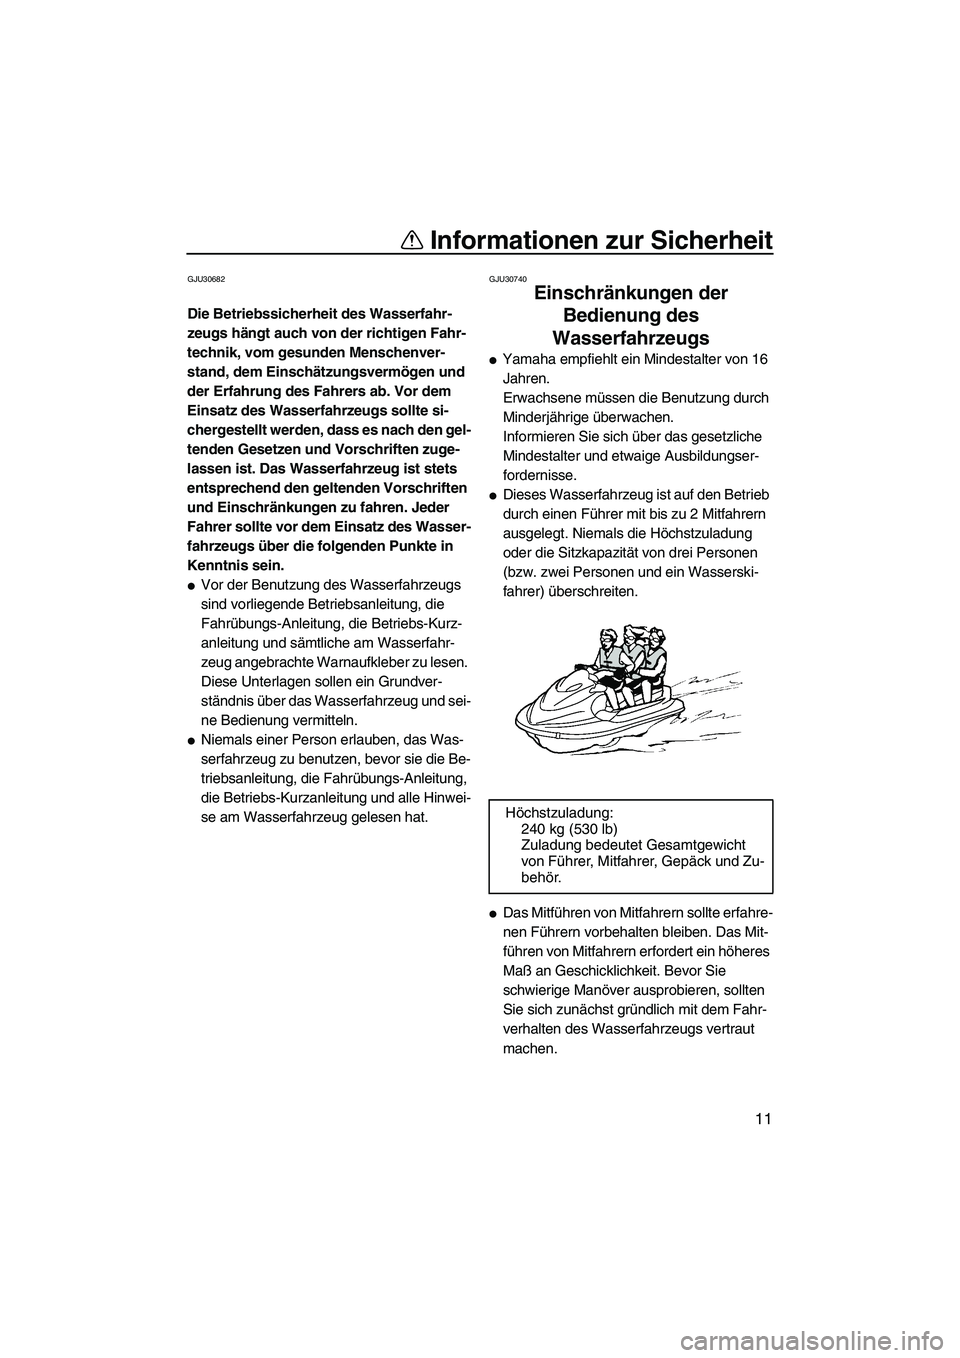 YAMAHA FZS SVHO 2010  Betriebsanleitungen (in German) Informationen zur Sicherheit
11
GJU30682
Die Betriebssicherheit des Wasserfahr-
zeugs hängt auch von der richtigen Fahr-
technik, vom gesunden Menschenver-
stand, dem Einschätzungsvermögen und 
der